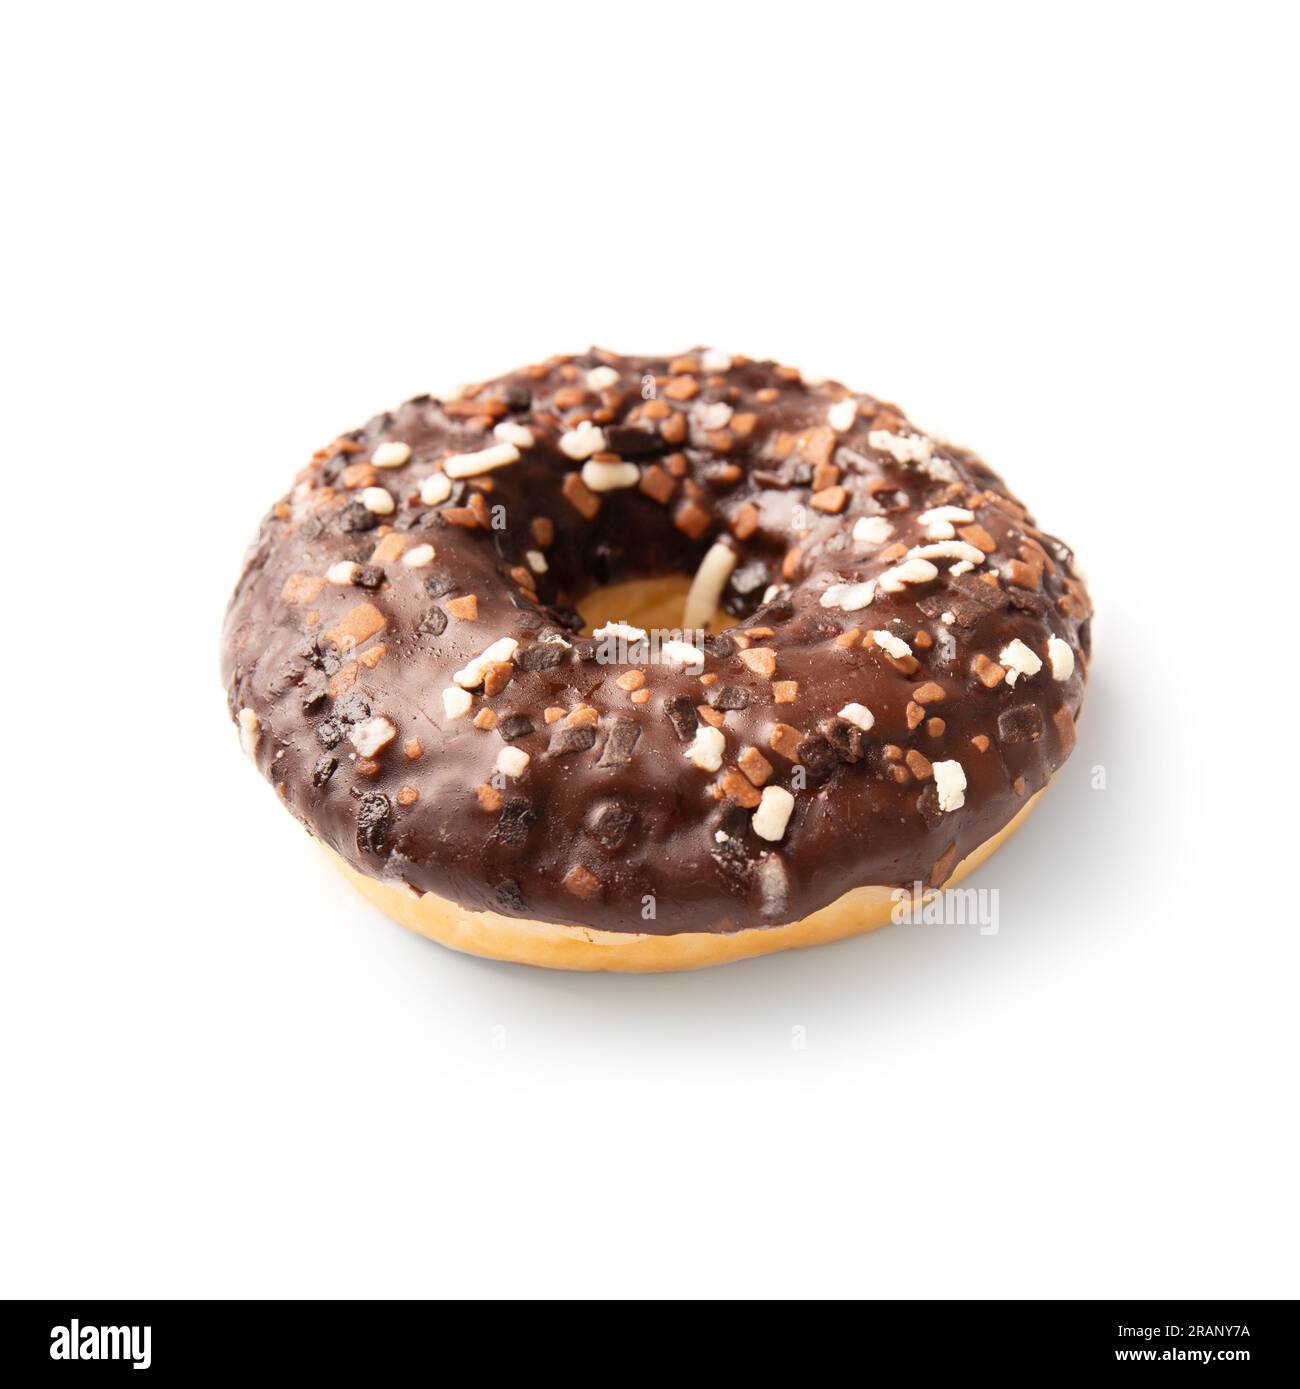 Un donut recouvert de glaçage au chocolat parsemé de morceaux de chocolat blanc, de lait et de chocolat noir isolés sur un fond blanc. Aliments à haute teneur en calories. Banque D'Images